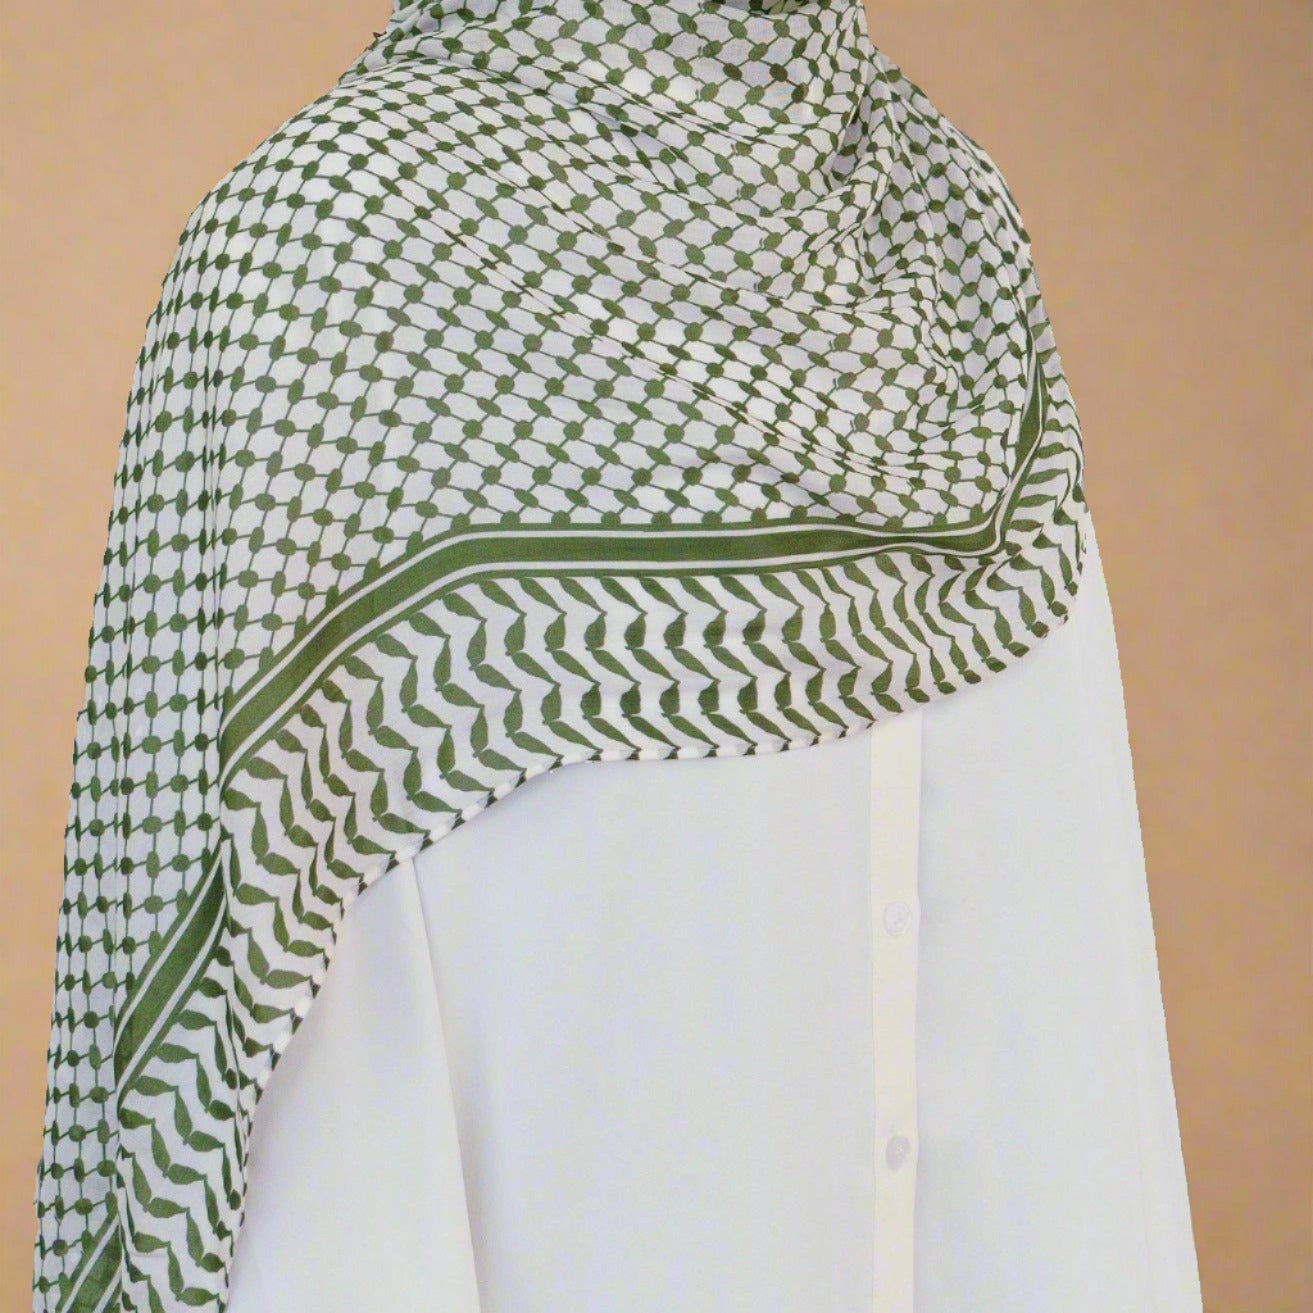 Stärke: Palä stine nsi scher Keffiyeh Hijab/Schal